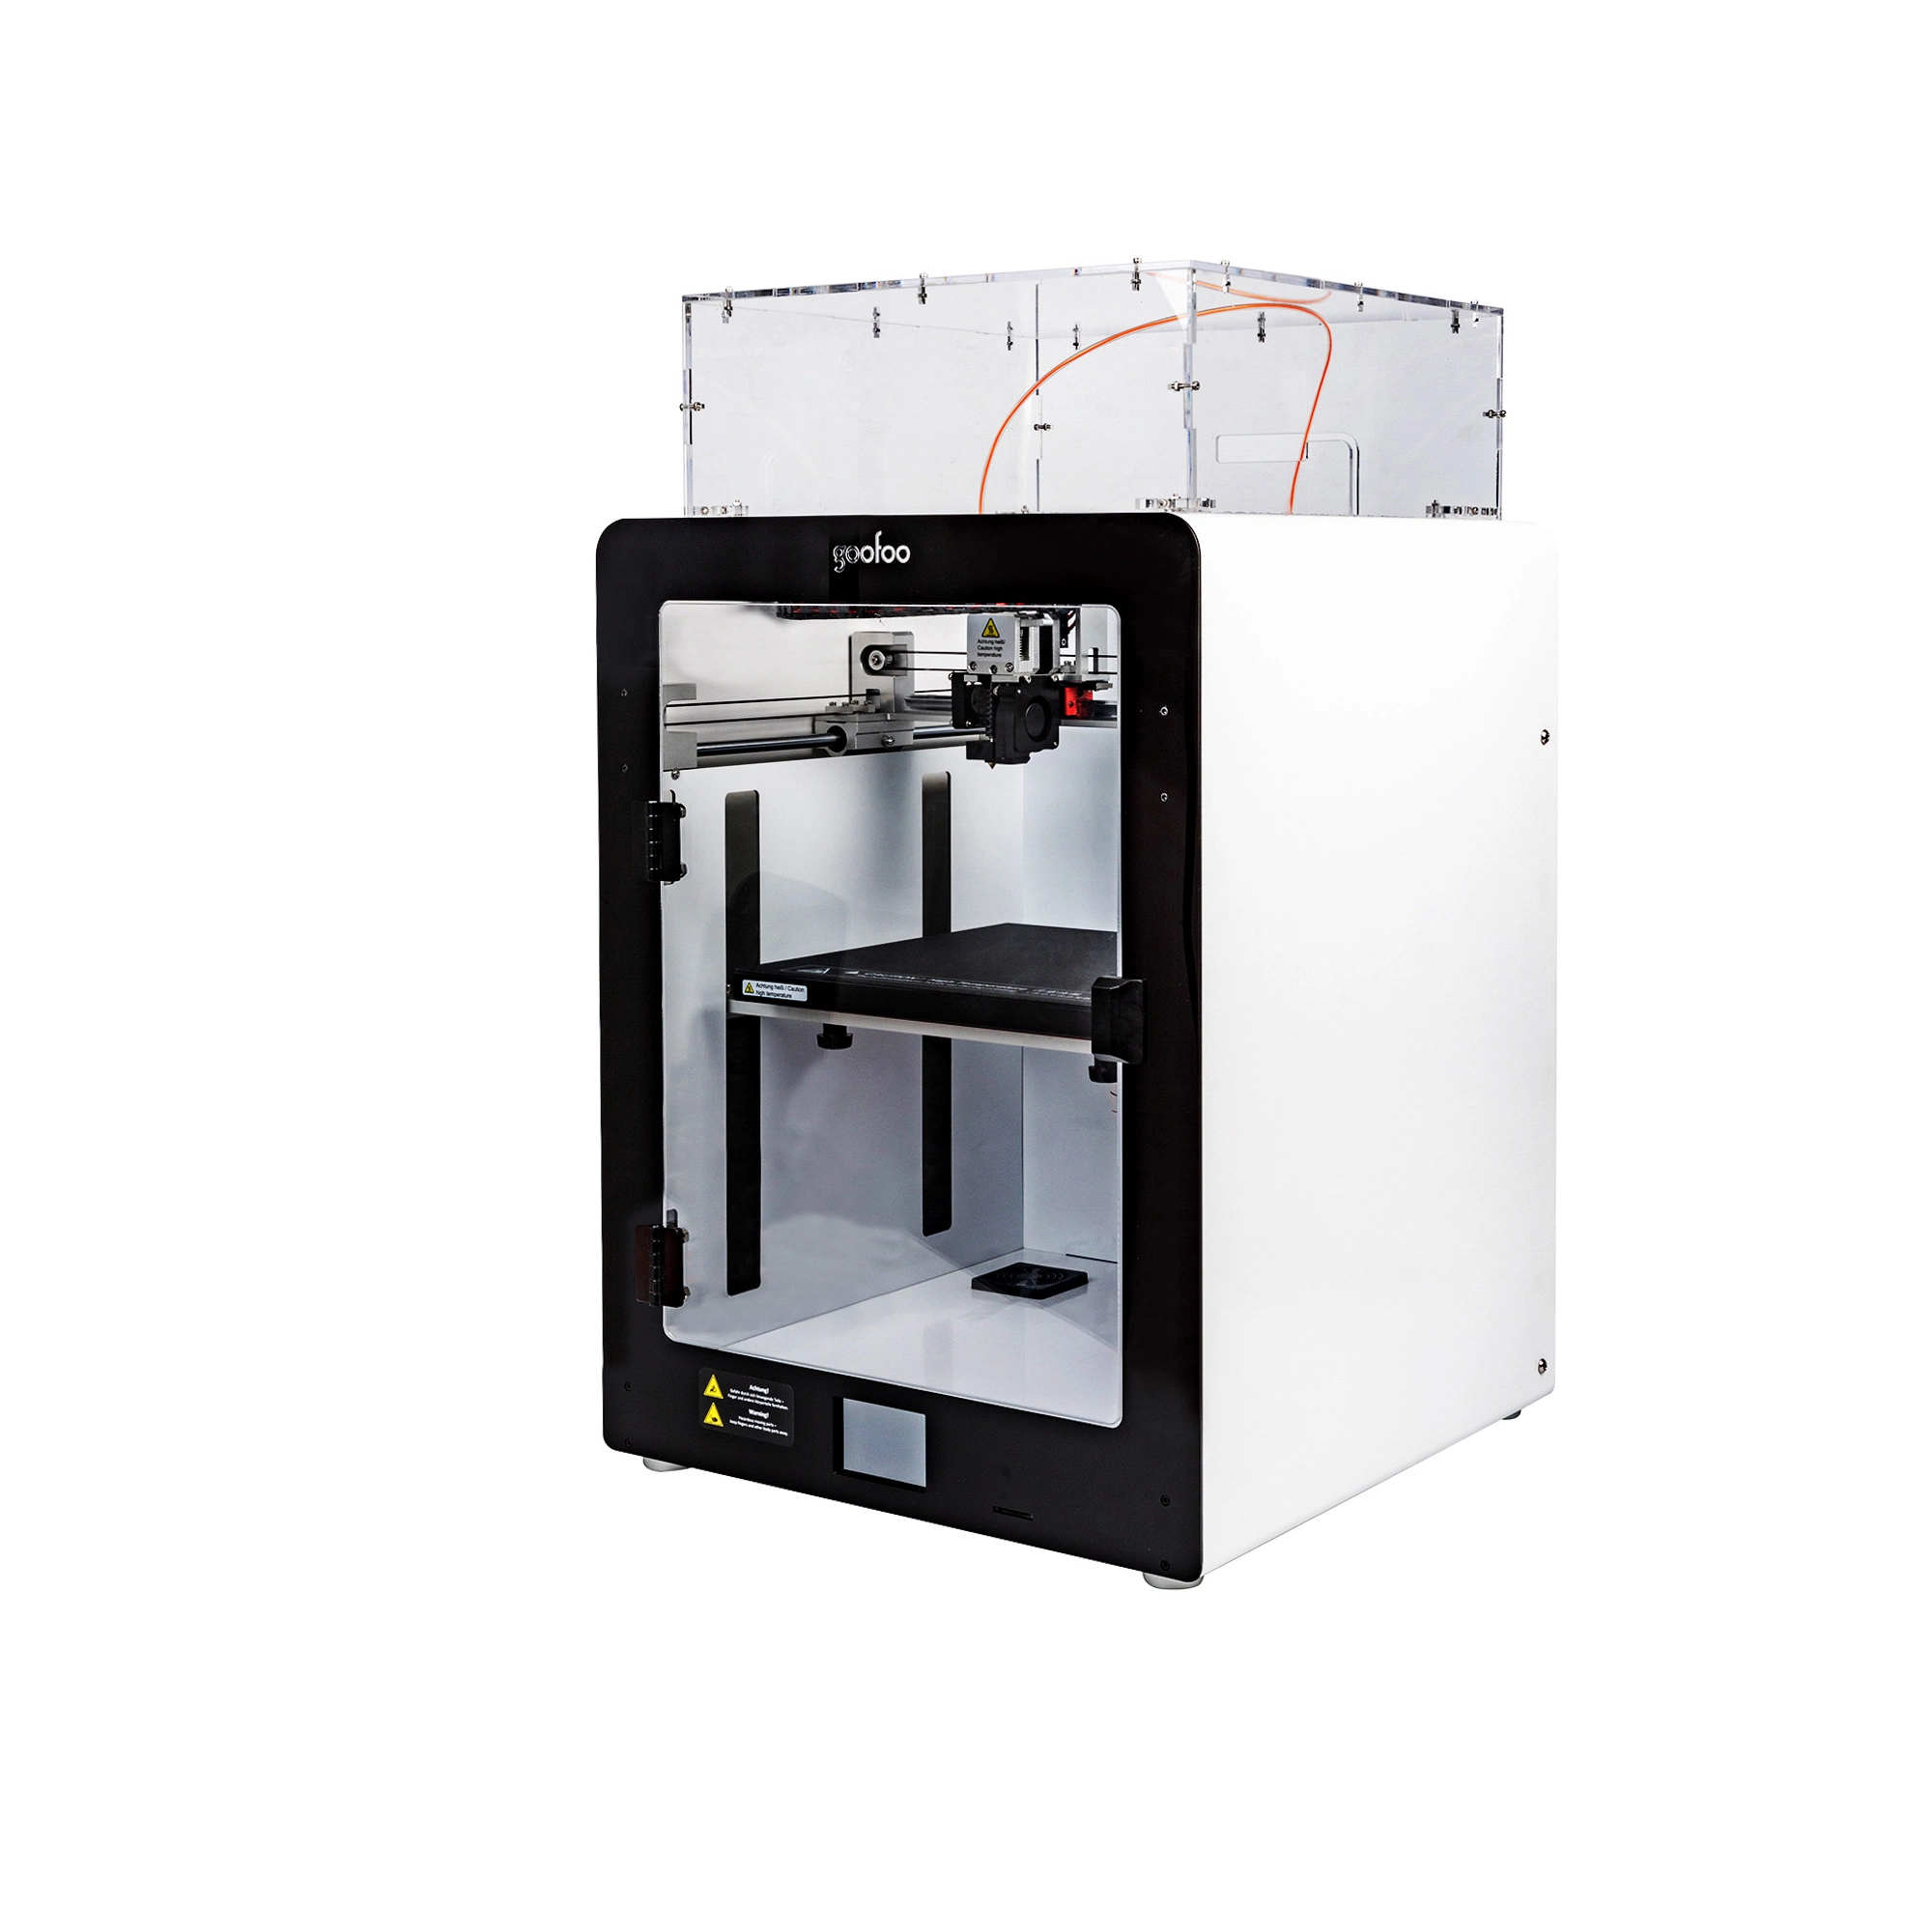 Impressora FDM 3D profissional e industrial com grande volume de construção de 280 * 280 * 300 mm e corpo sólido para impressão com PLA de filamento 3D de 1,75 mm, ABS, PETG, nylon, fibra de carbono